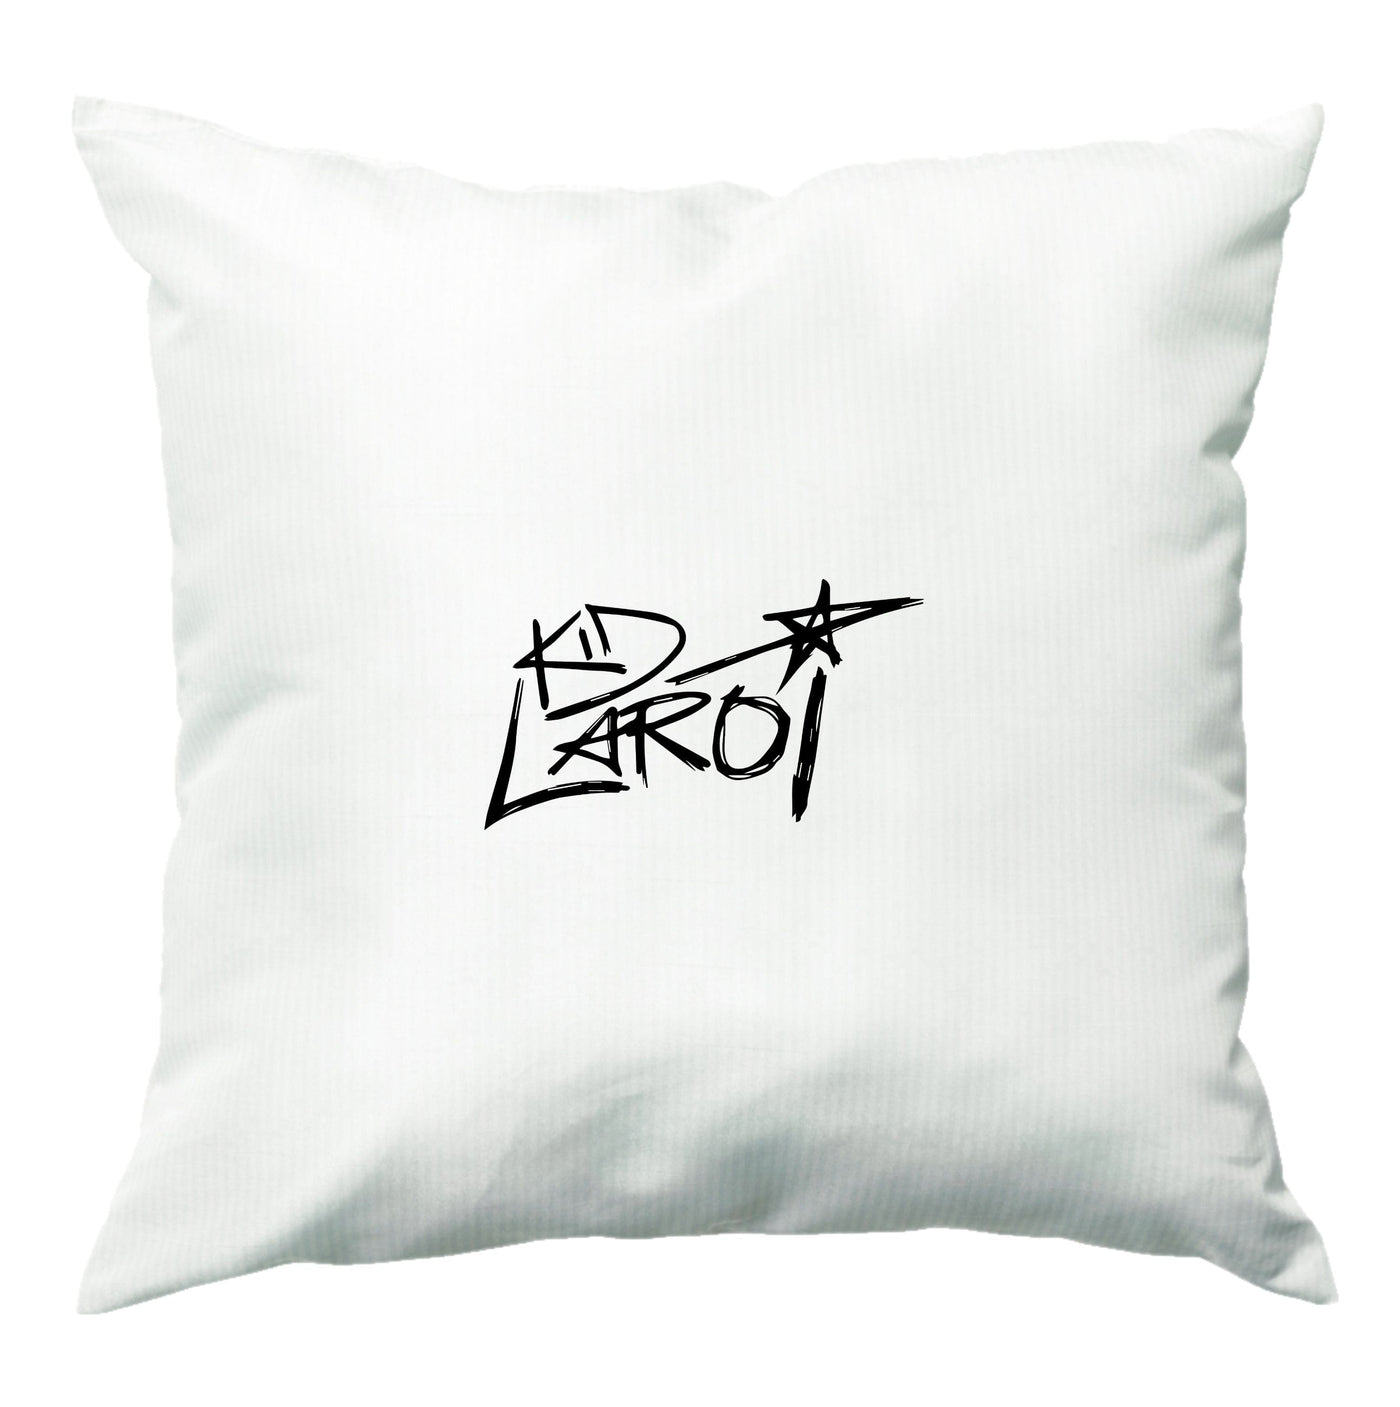 Kid Laroi Sketch  Cushion